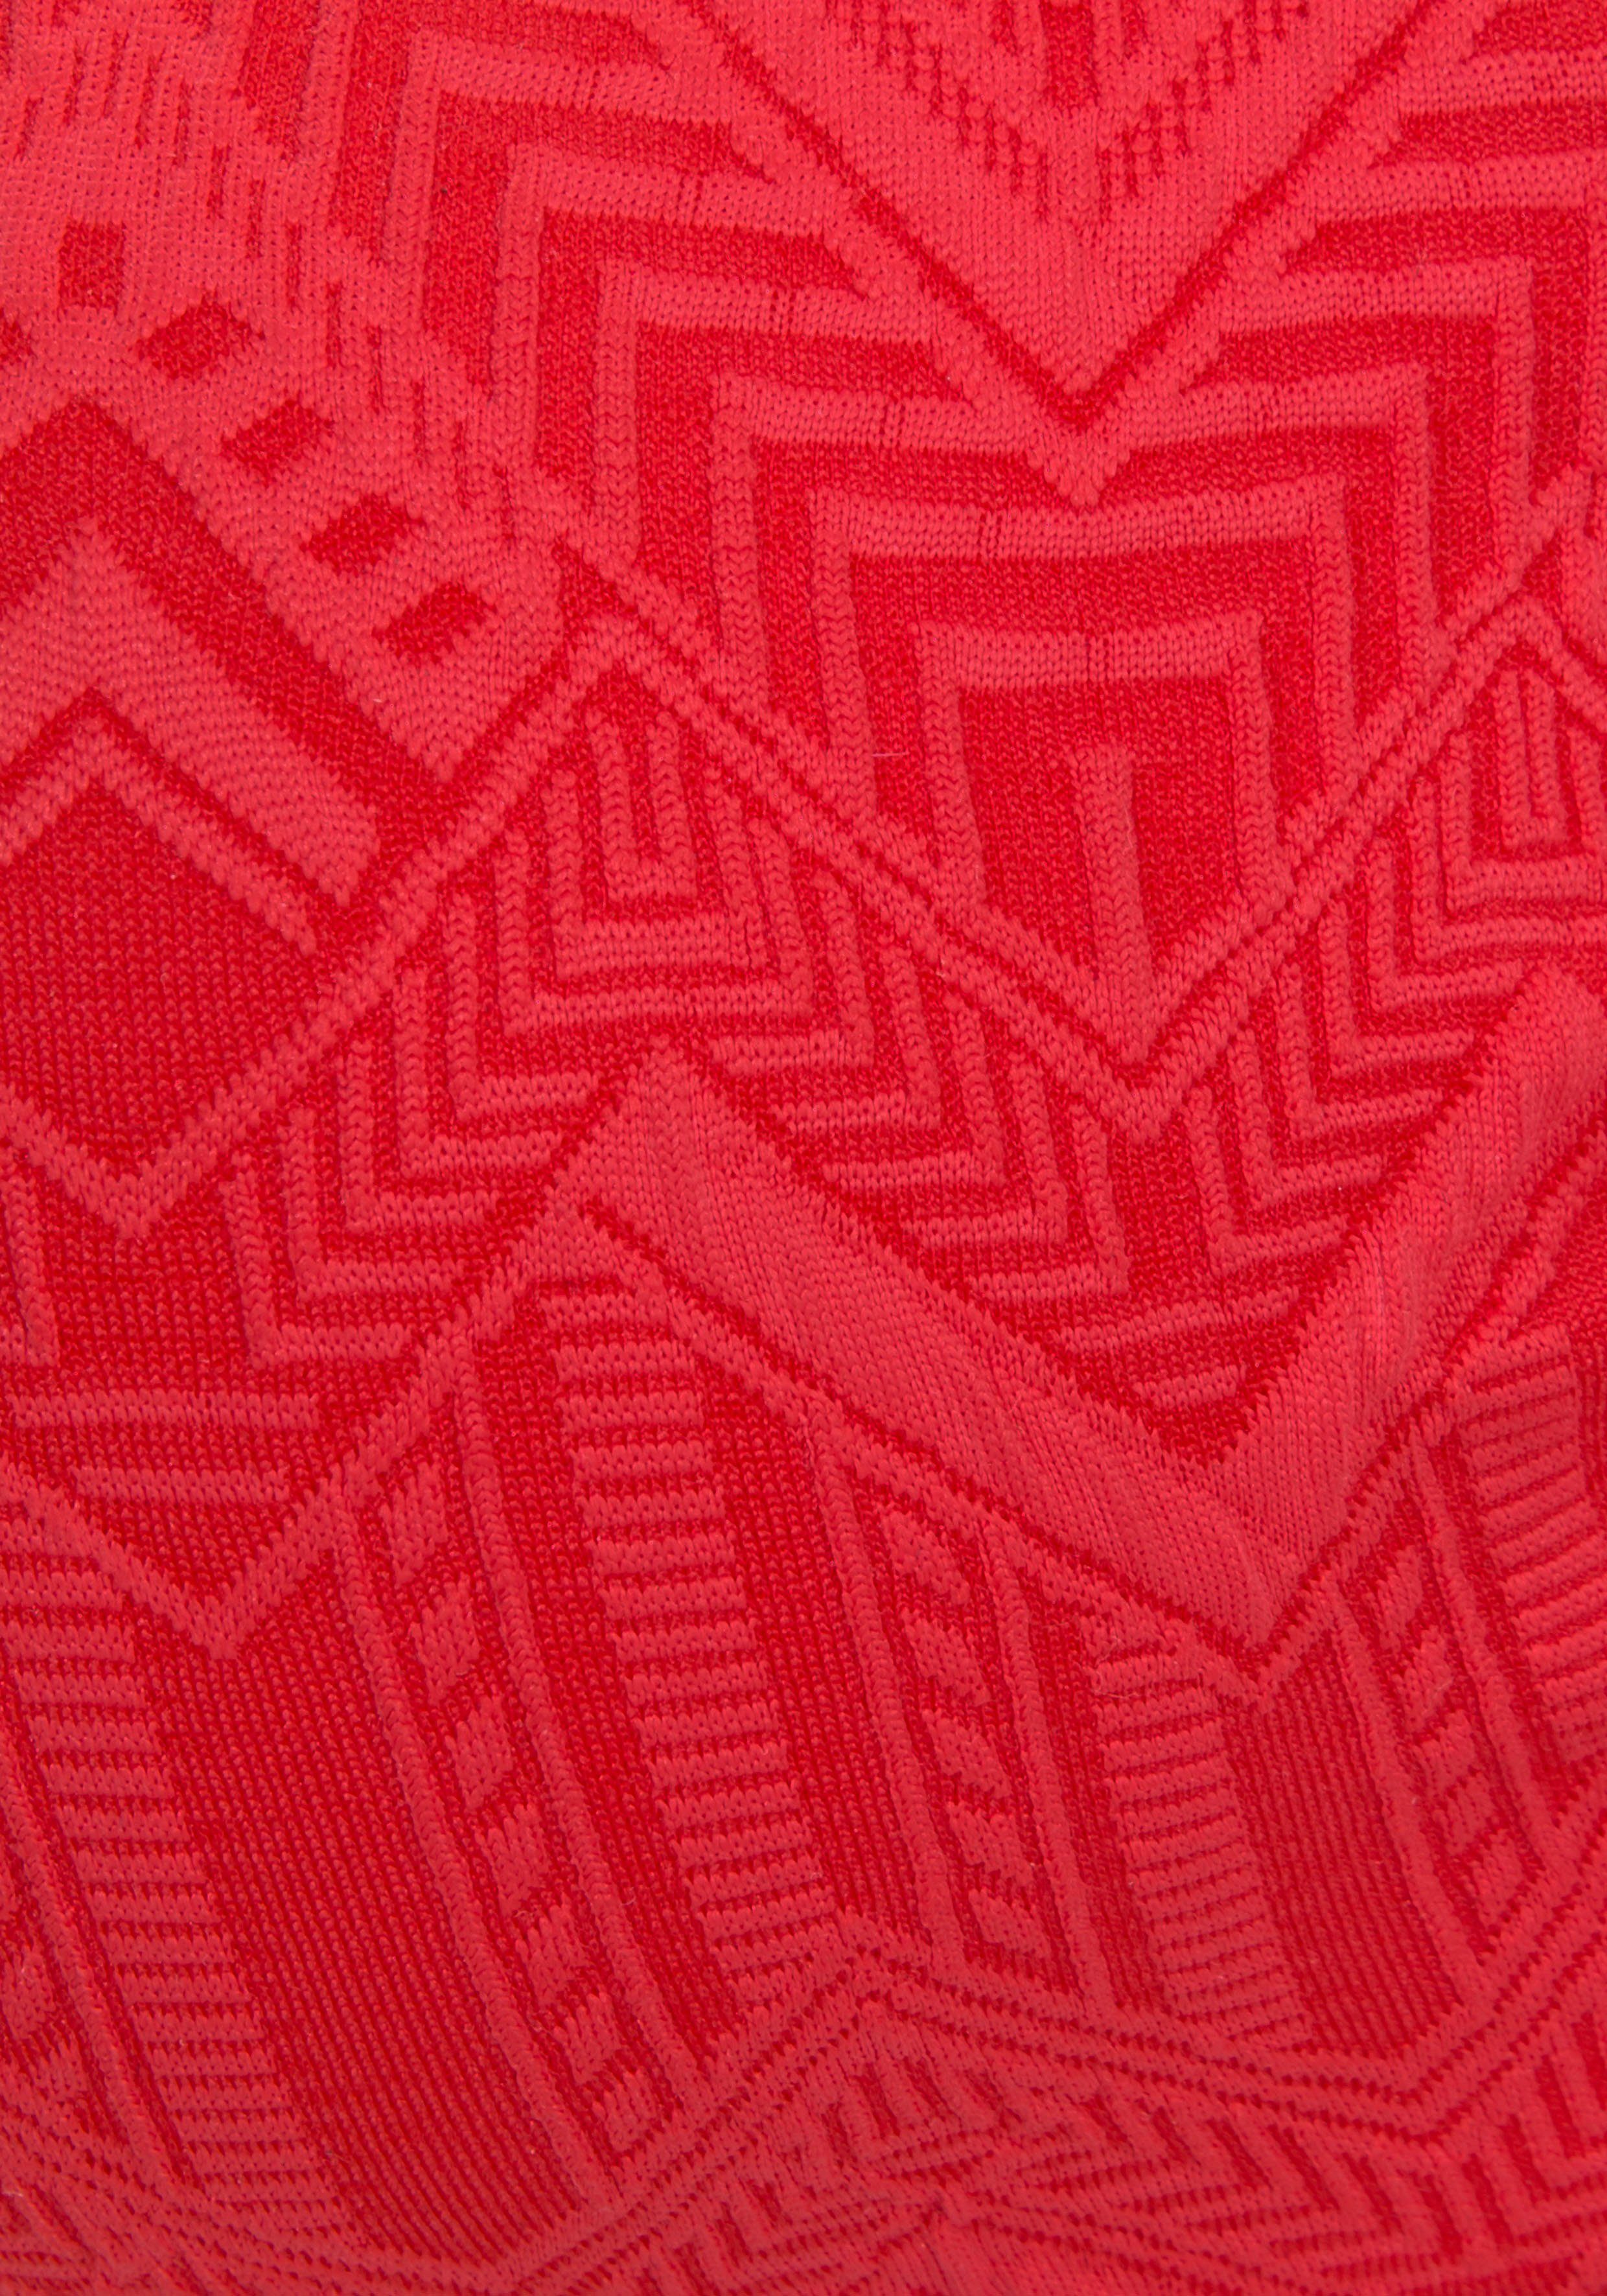 Buffalo Bügel-Bandeau-Bikini aus Strukturware rot